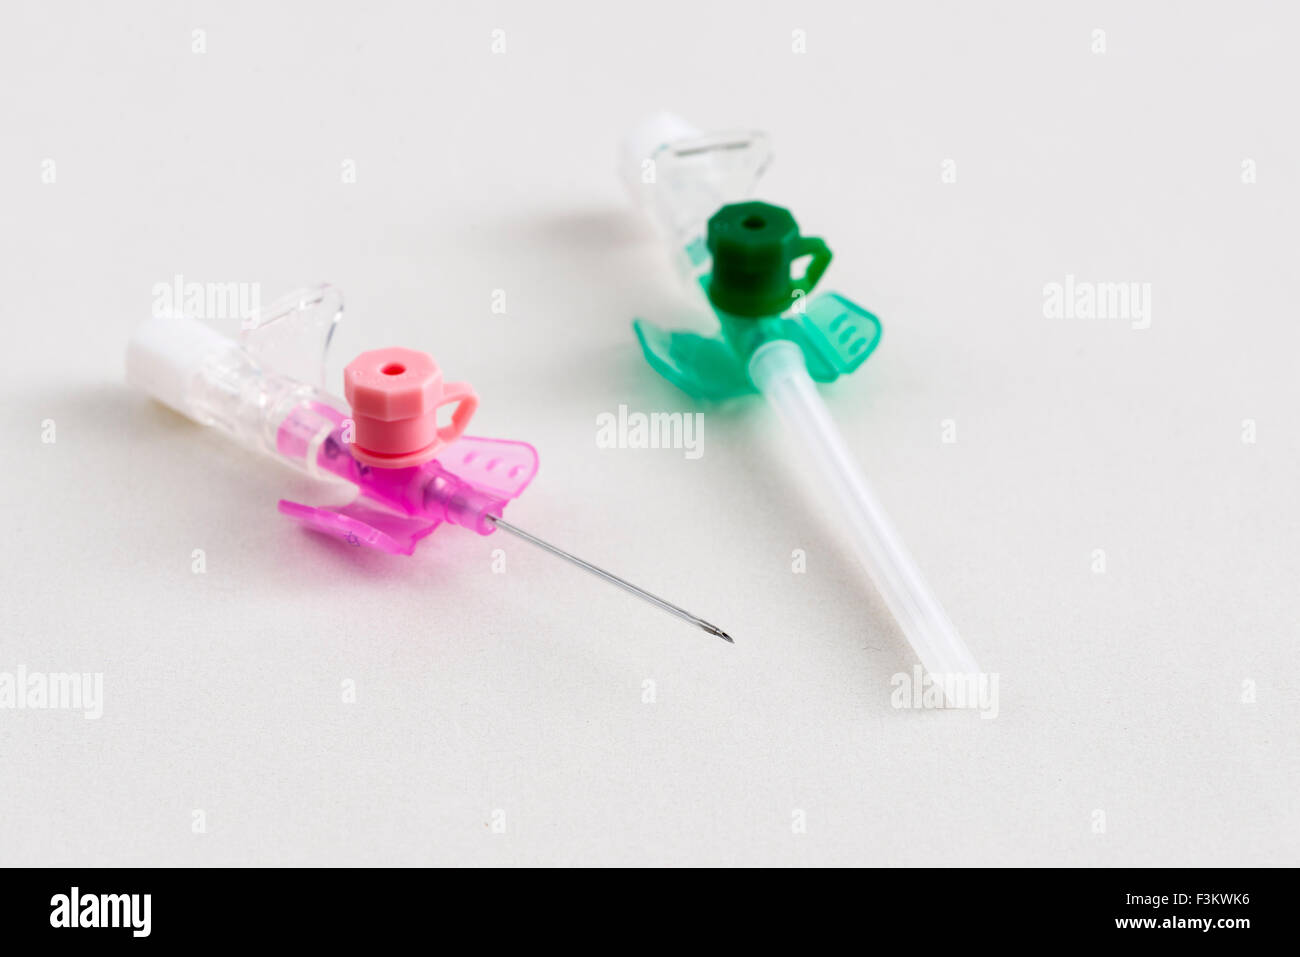 Una rosa una sicurezza verde catetere iv con porta di iniezione per uso medico, visualizzato su un tavolo bianco Foto Stock